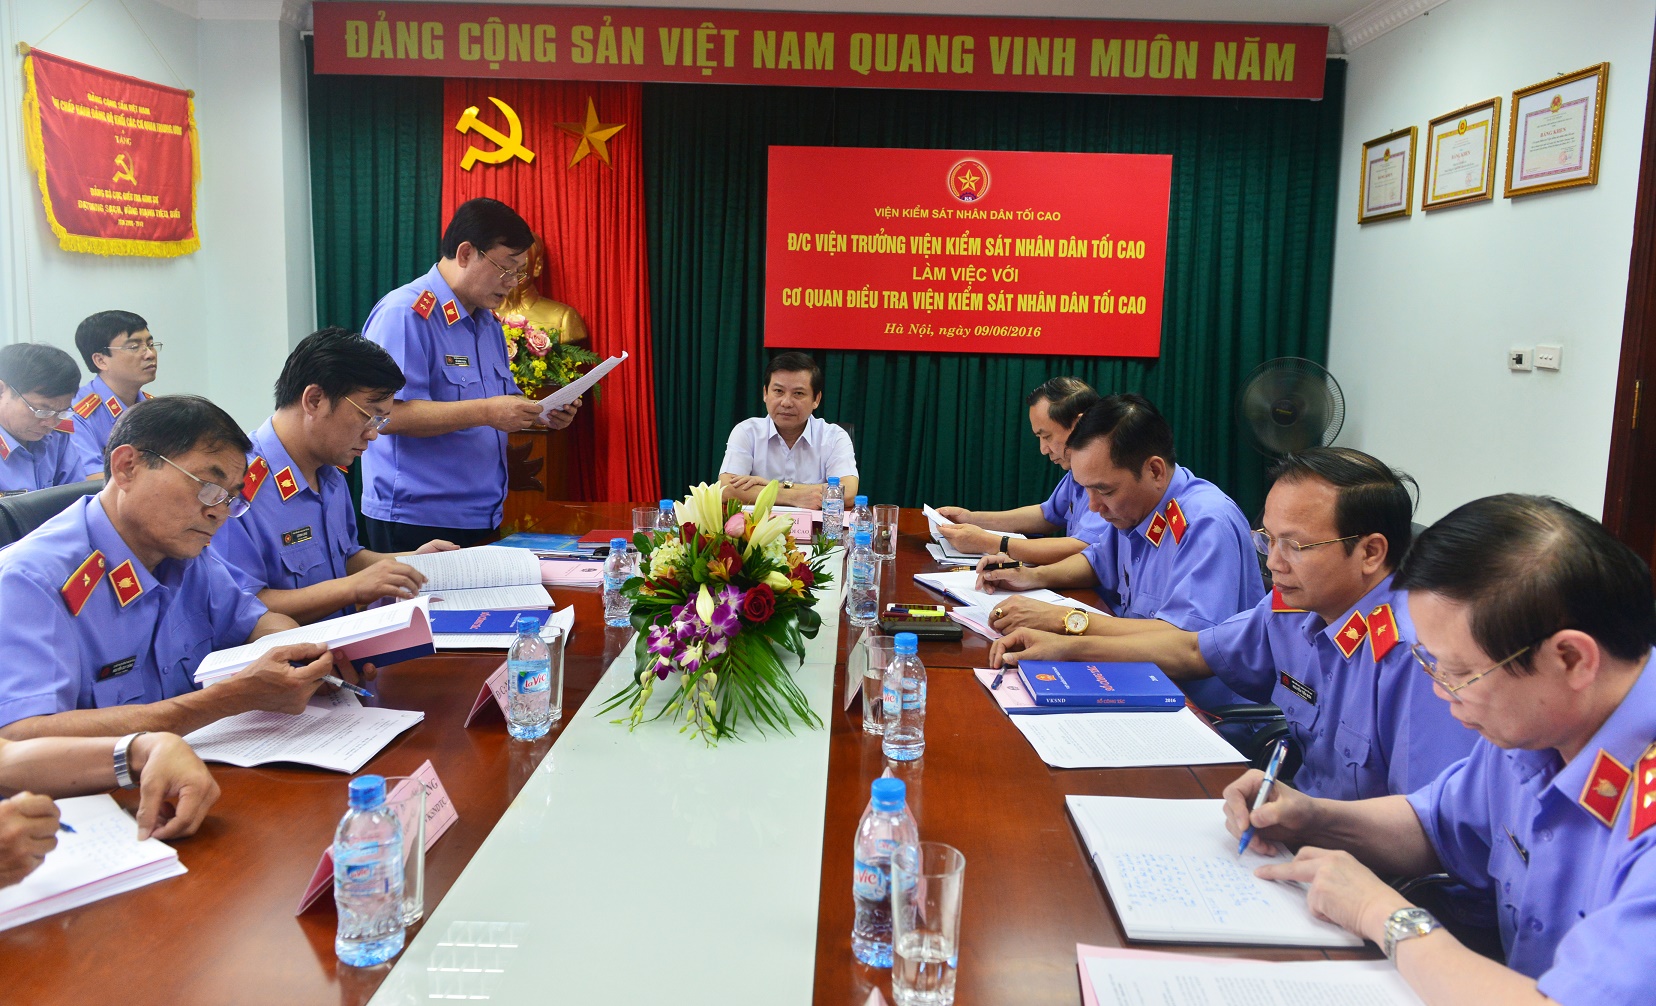 Viện trưởng VKSNDTC Lê Minh Trí nghe lãnh đạo Cơ quan điều tra VKSNDTC báo cáo kết quả công tác 6 tháng đầu năm 2016